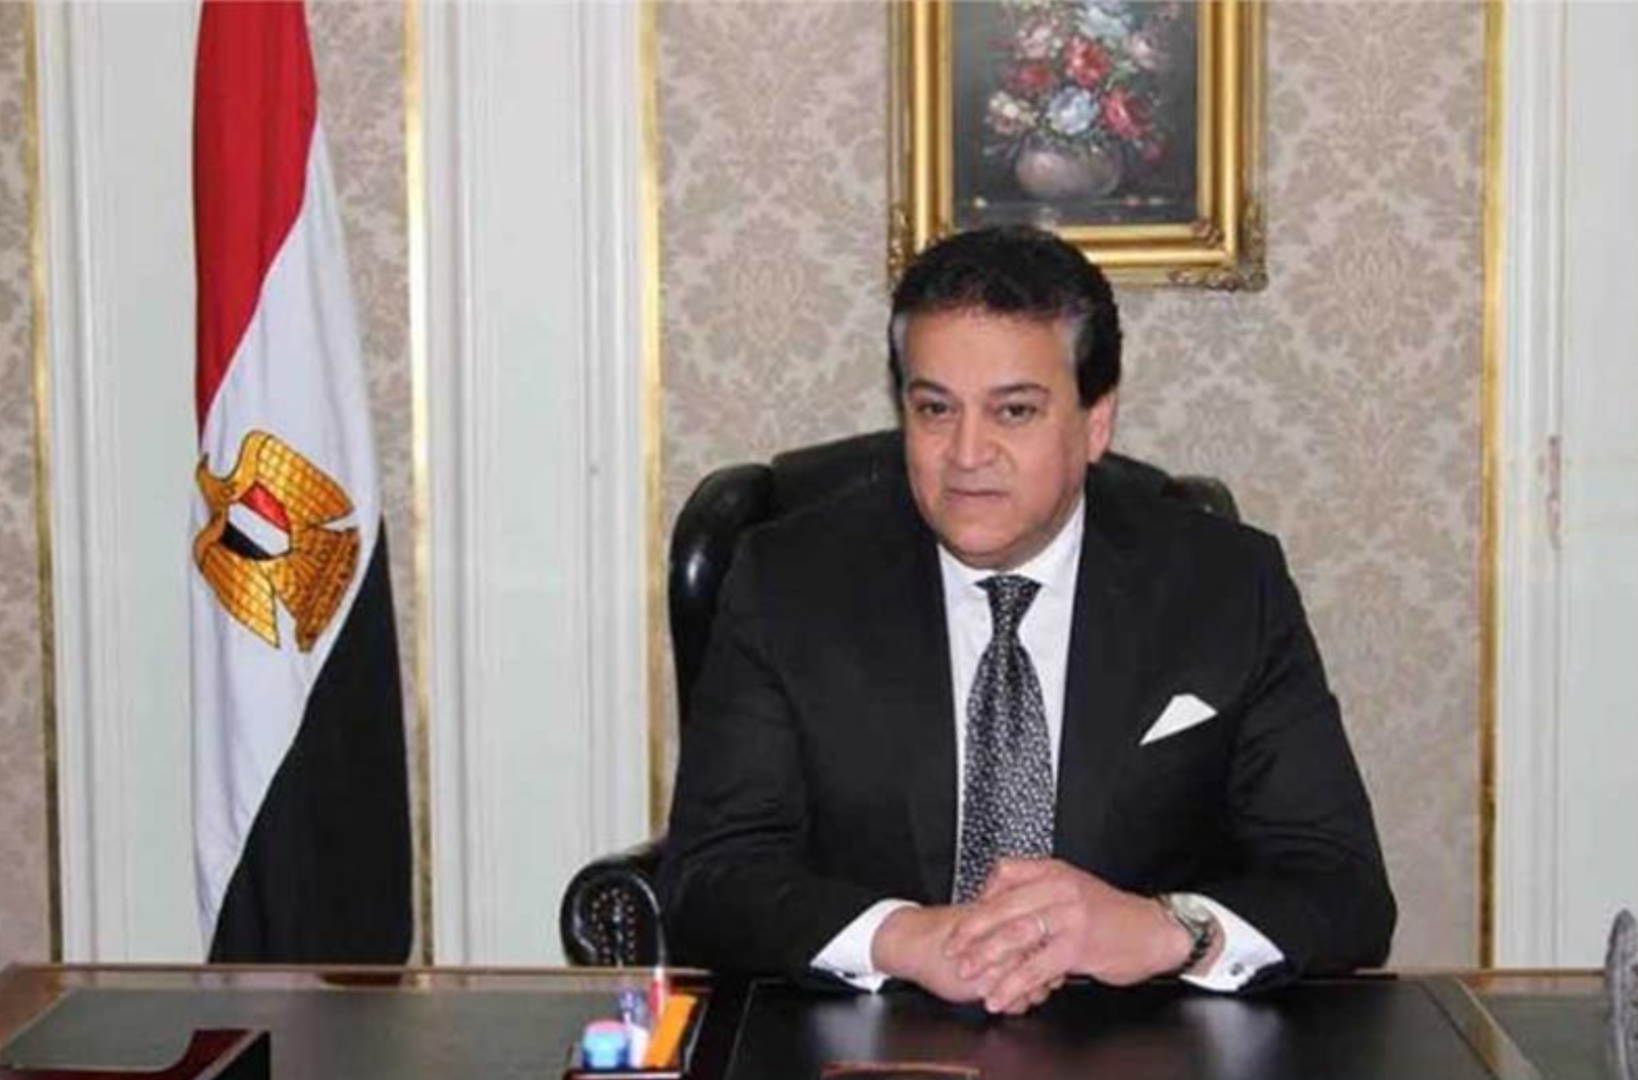 ▲埃及卫生和人口部长哈立德·阿卜杜勒·加法尔